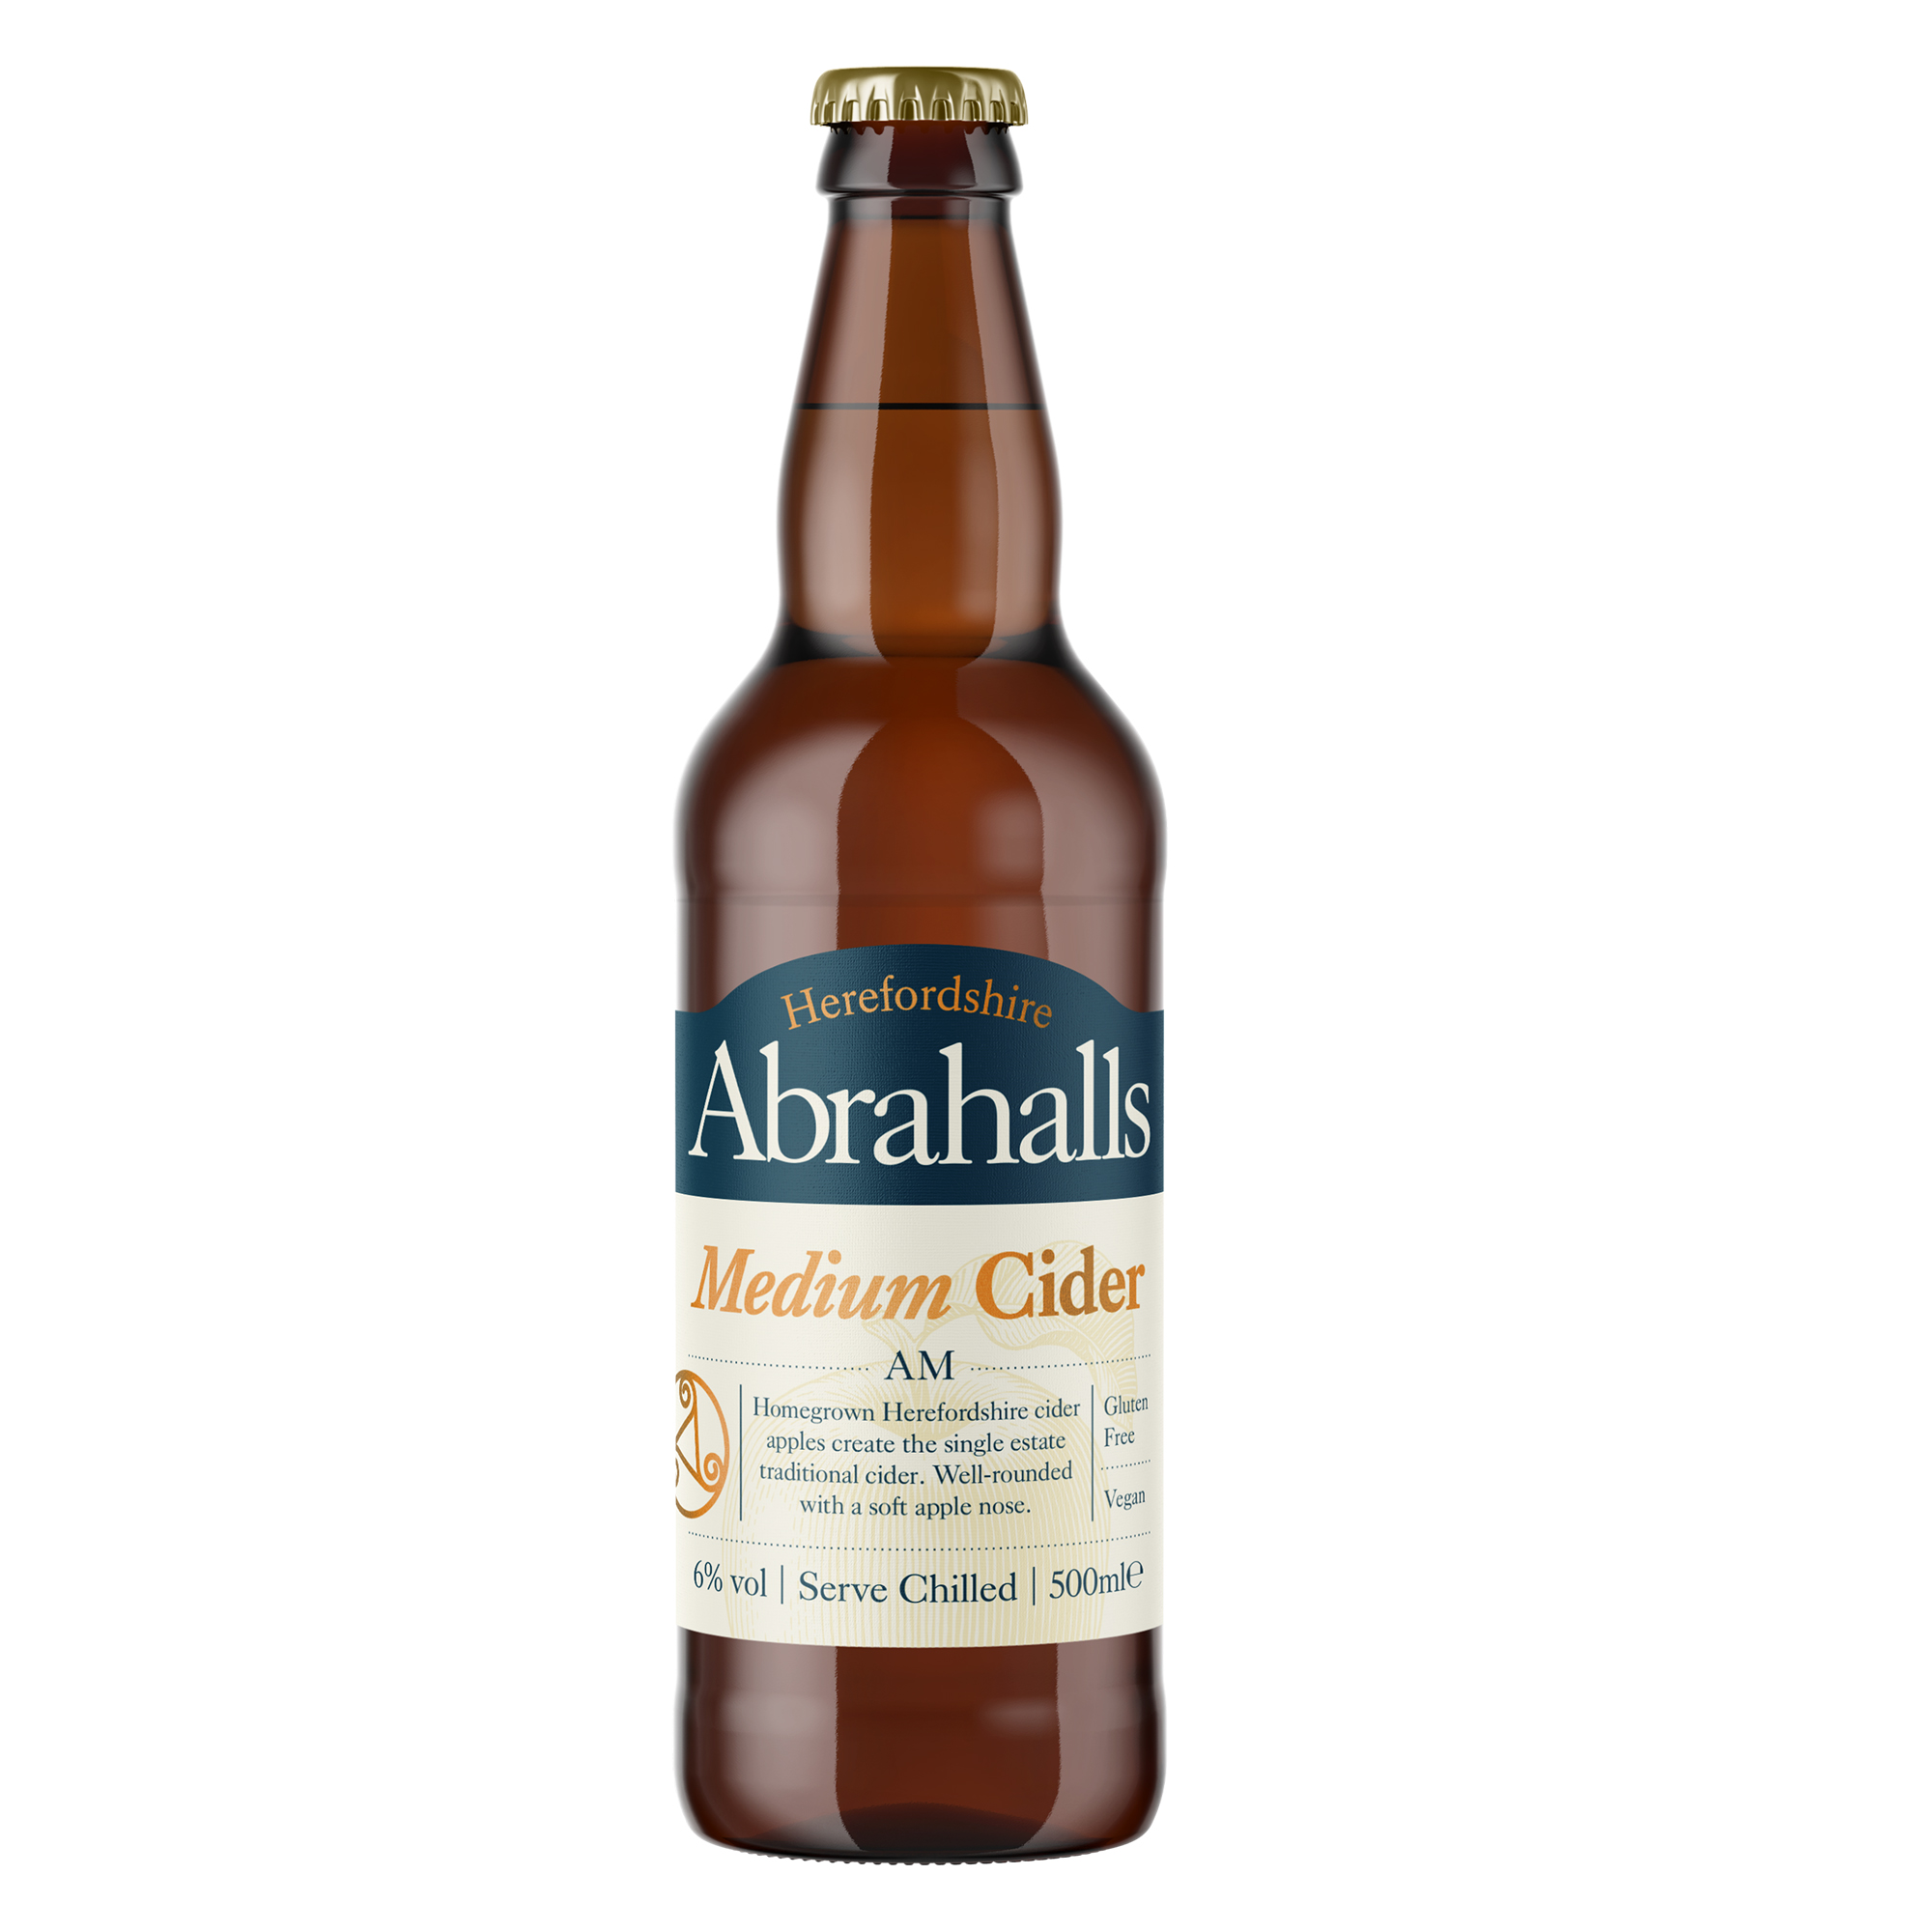 Abrahalls AM Medium Cider 500ml